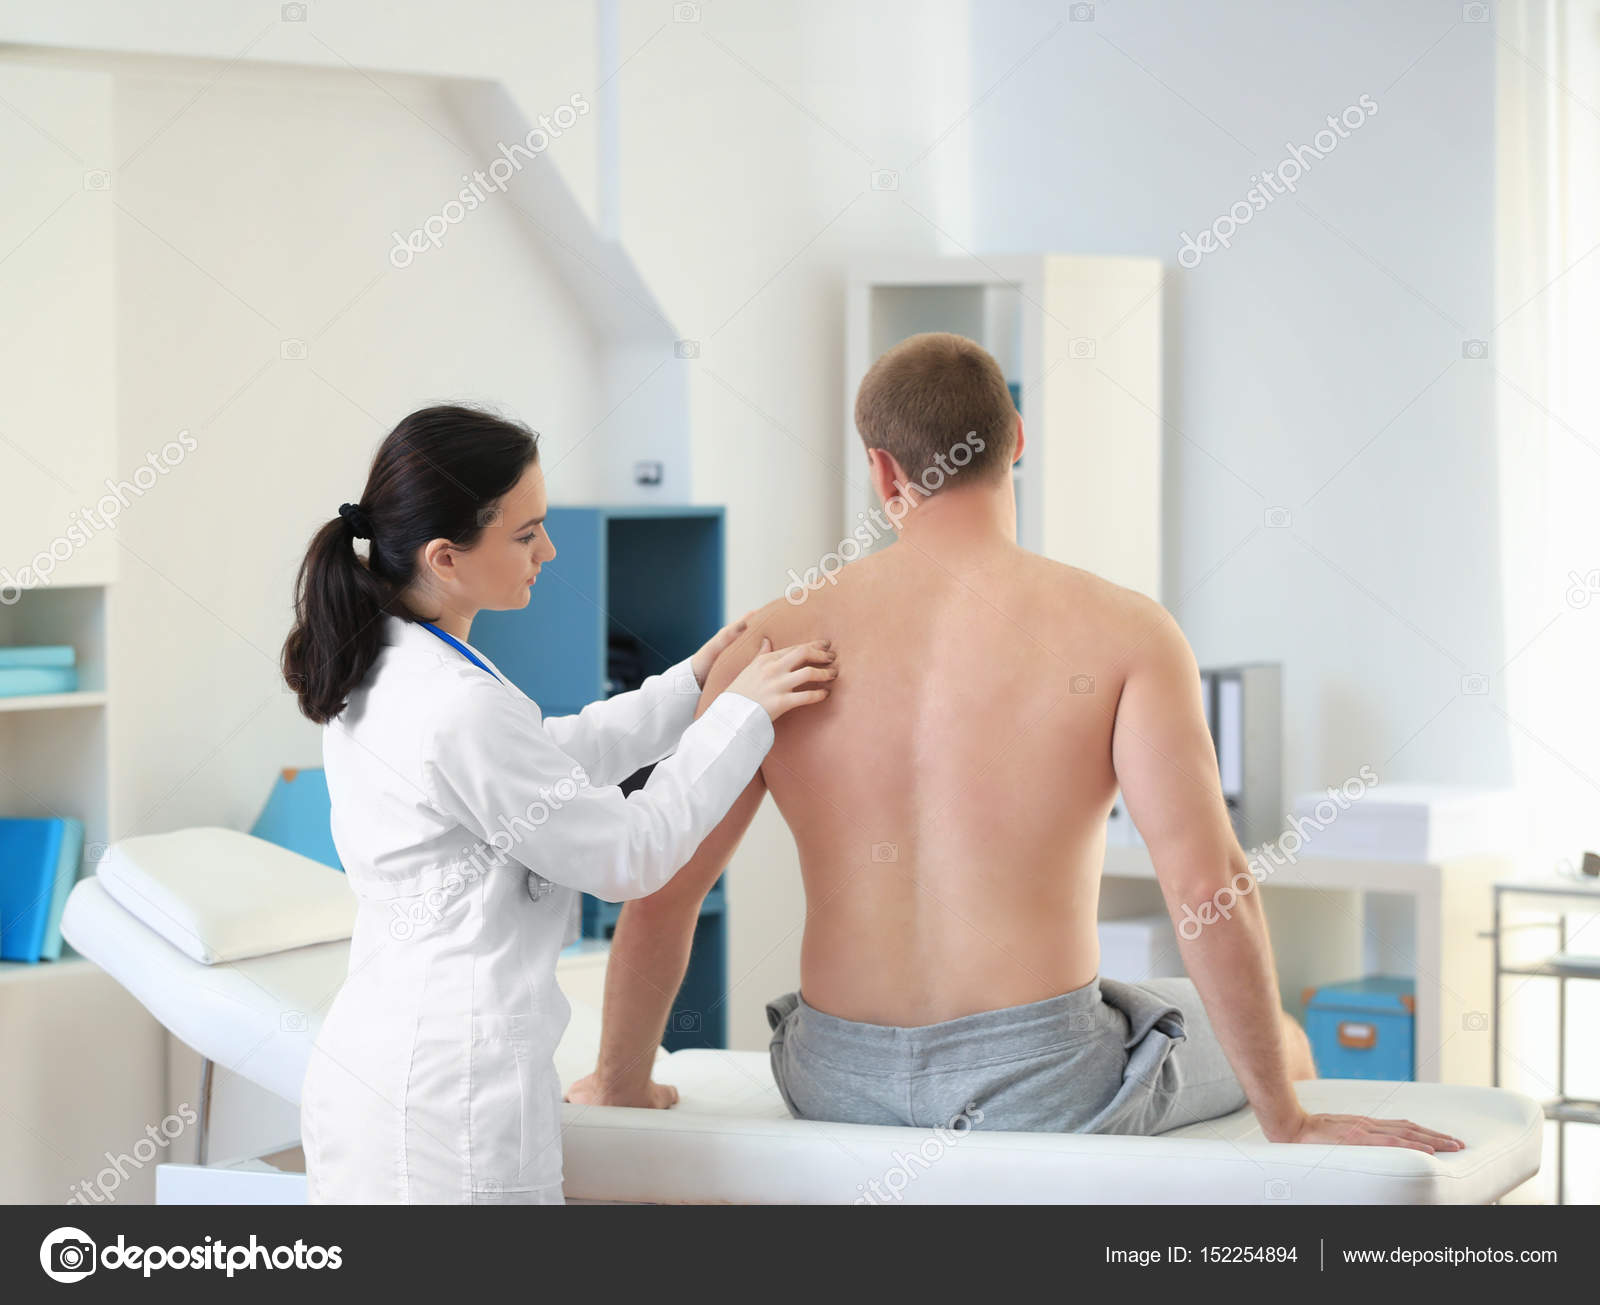 Врач по пояснице. Осмотр пациента. Обследование у врача. Врач осматривает больного. Врач осматривает плечо.